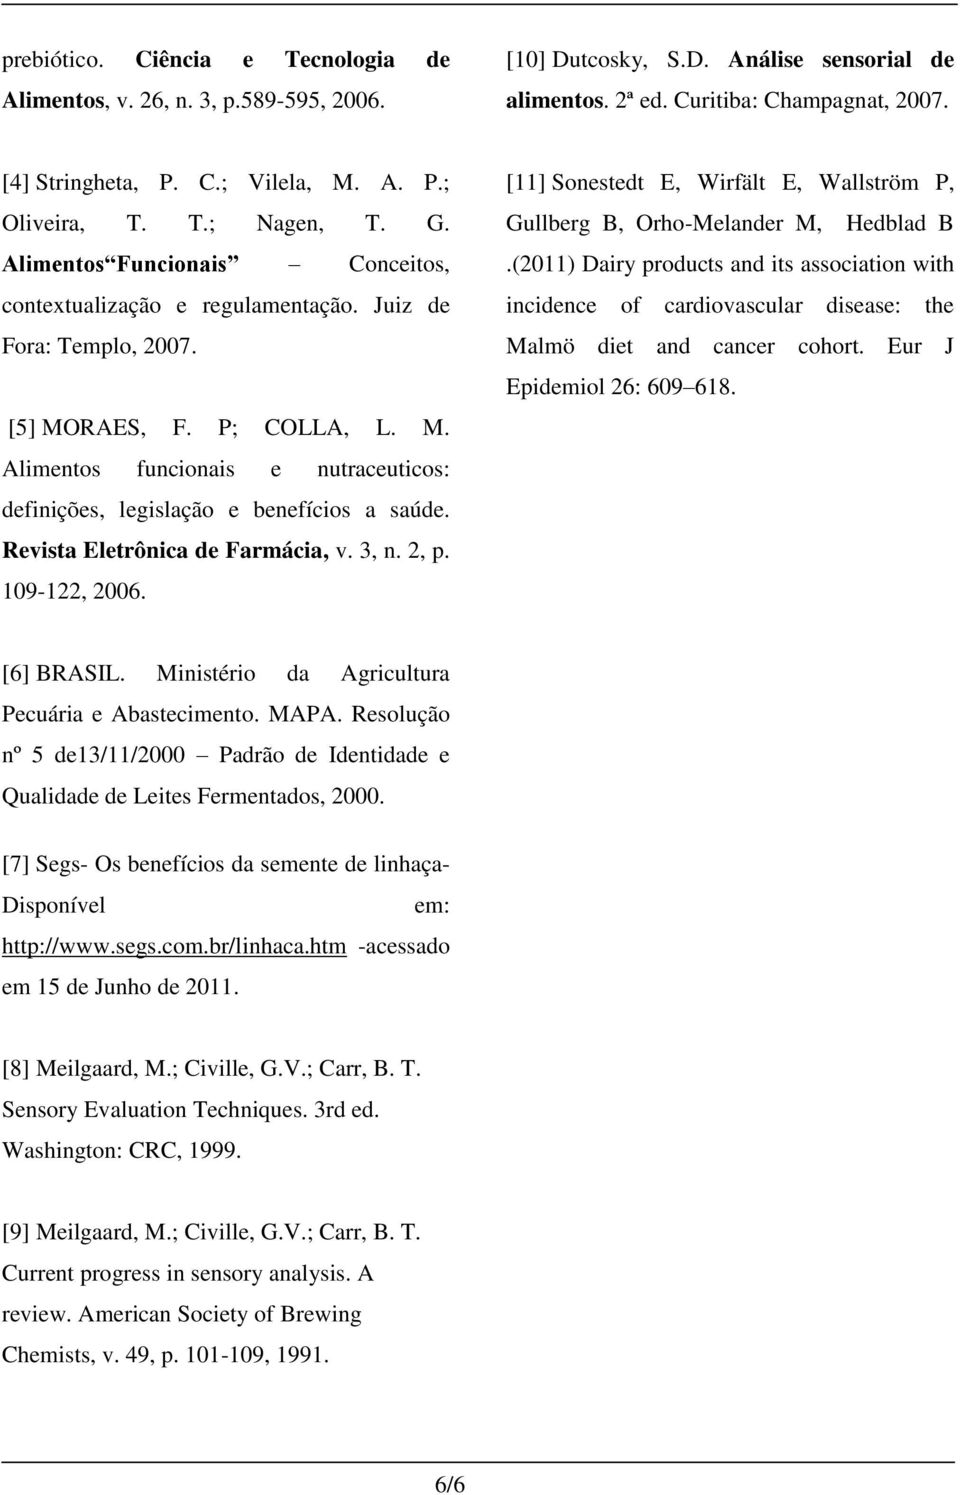 RAES, F. P; COLLA, L. M. Alimentos funcionais e nutraceuticos: definições, legislação e benefícios a saúde. Revista Eletrônica de Farmácia, v. 3, n. 2, p. 109-122, 2006.